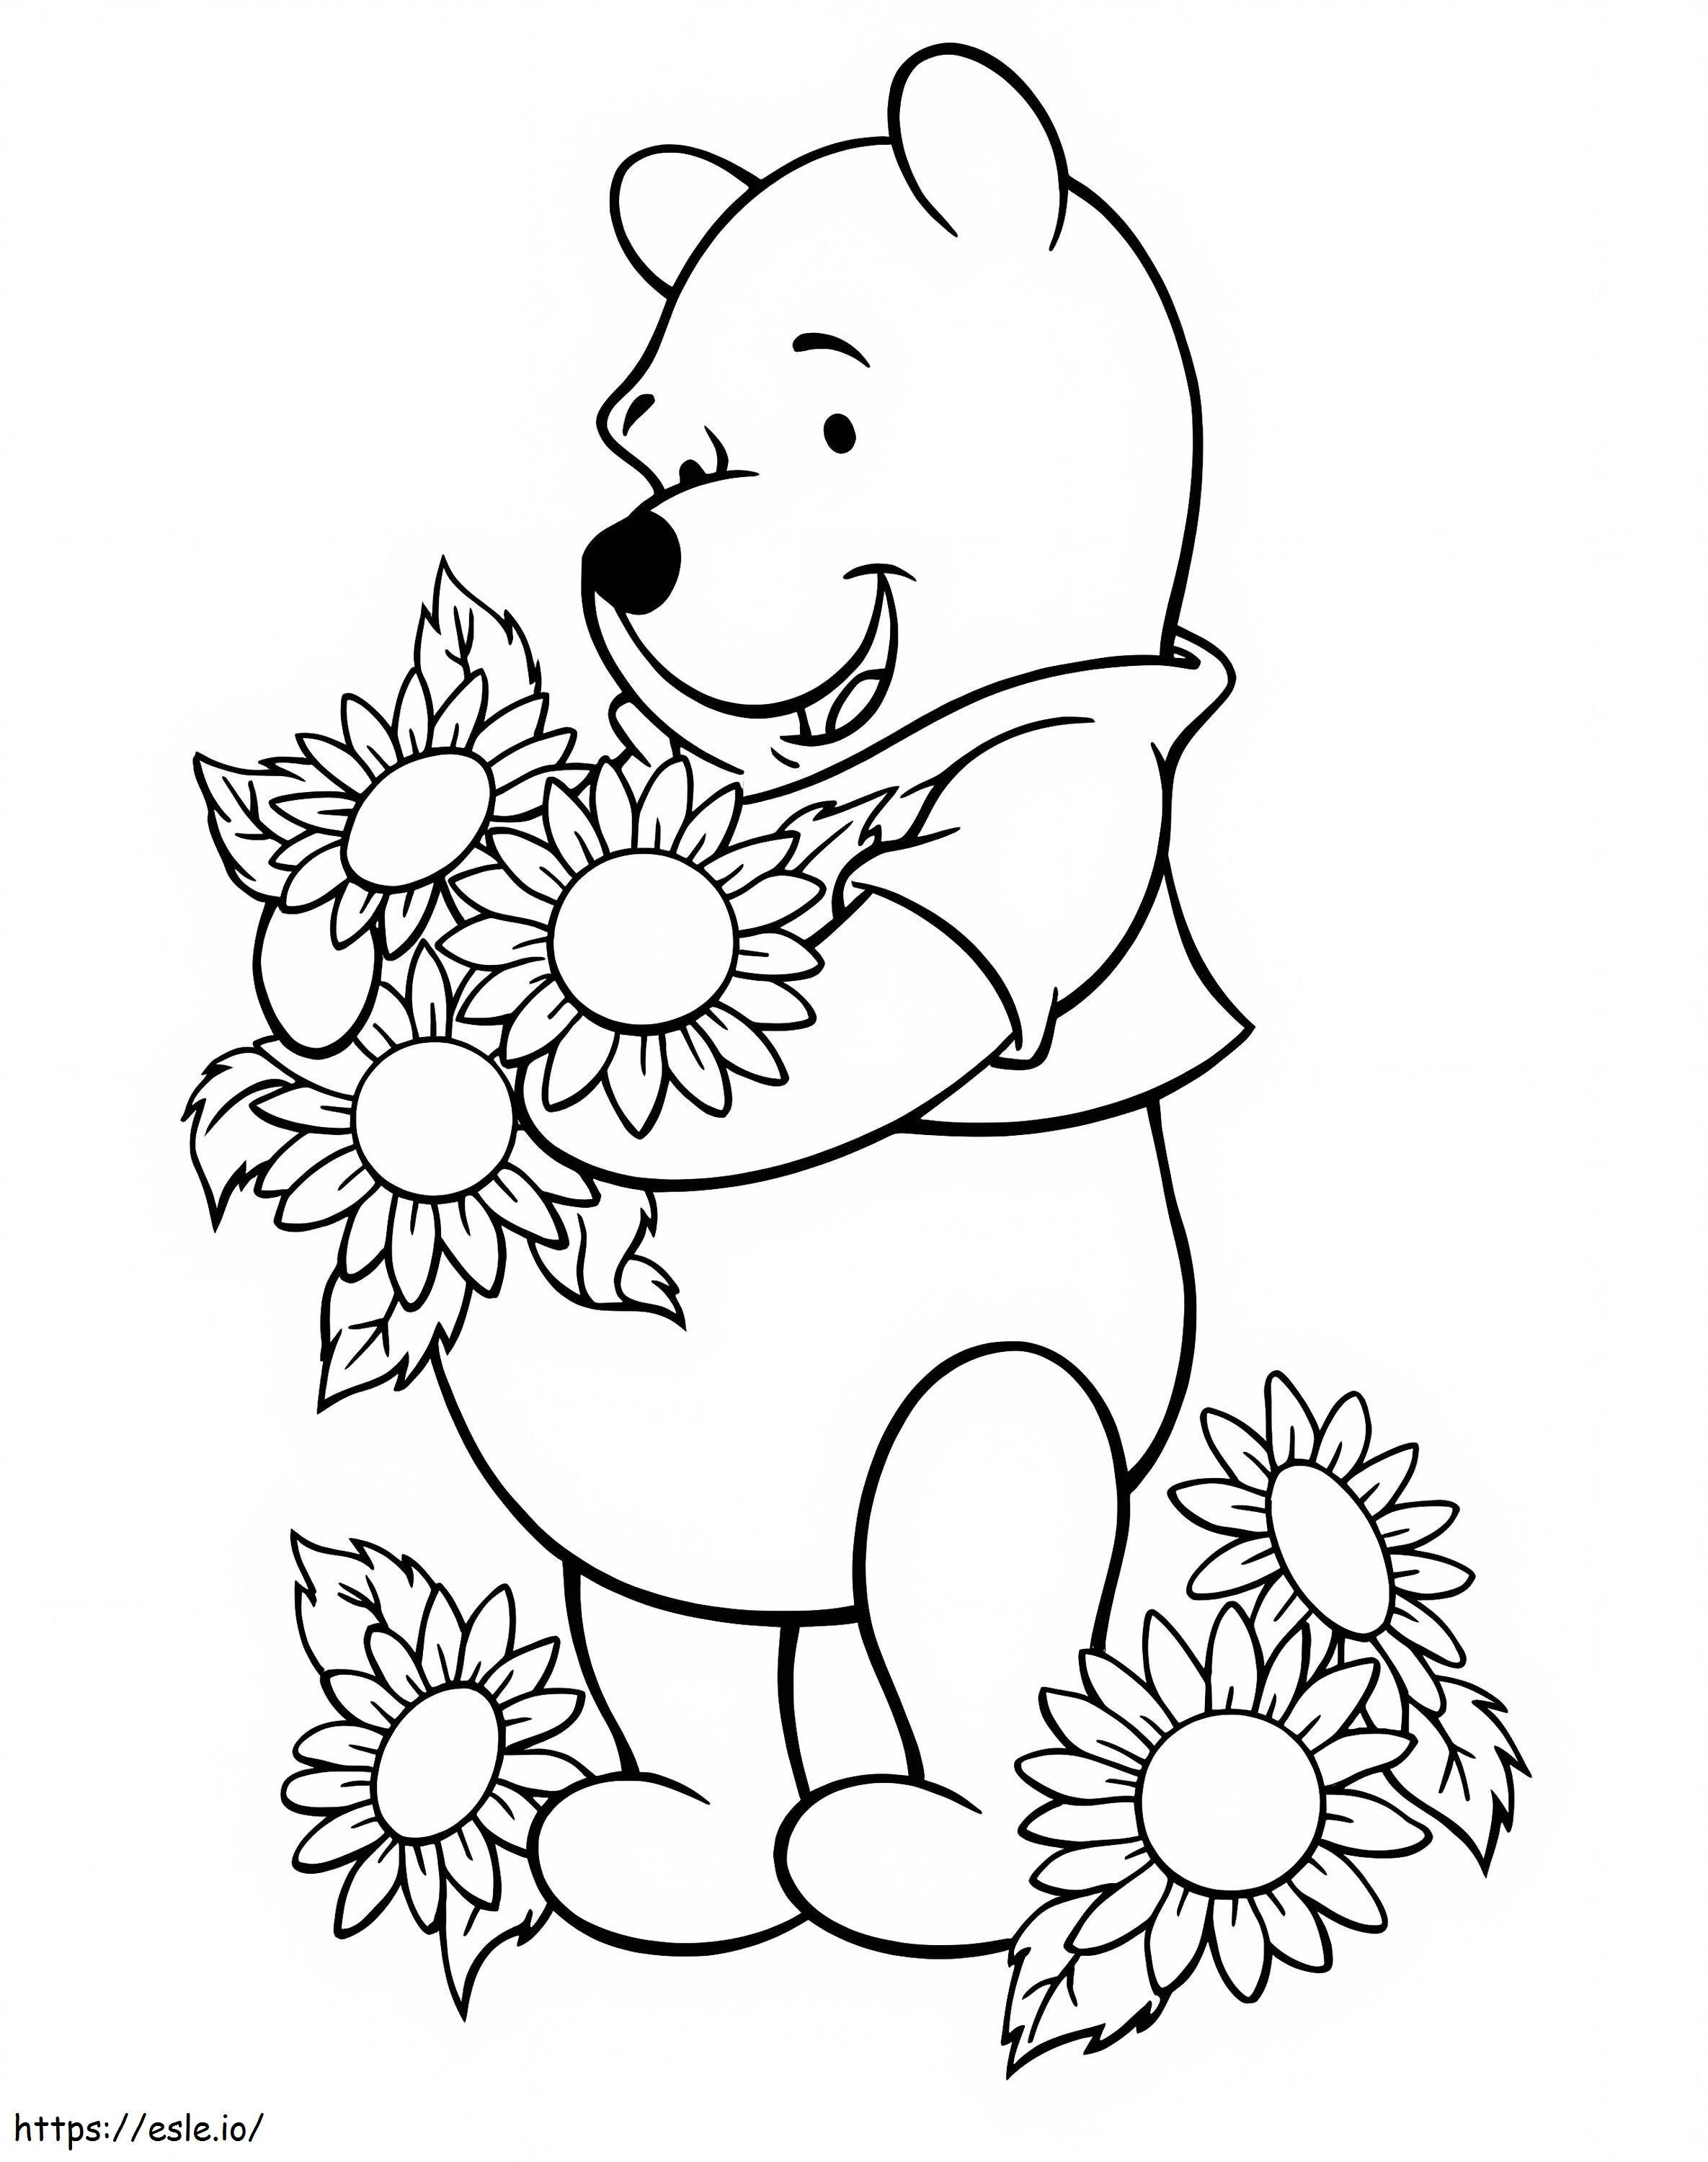 Winnie the Pooh purtând floarea soarelui de colorat